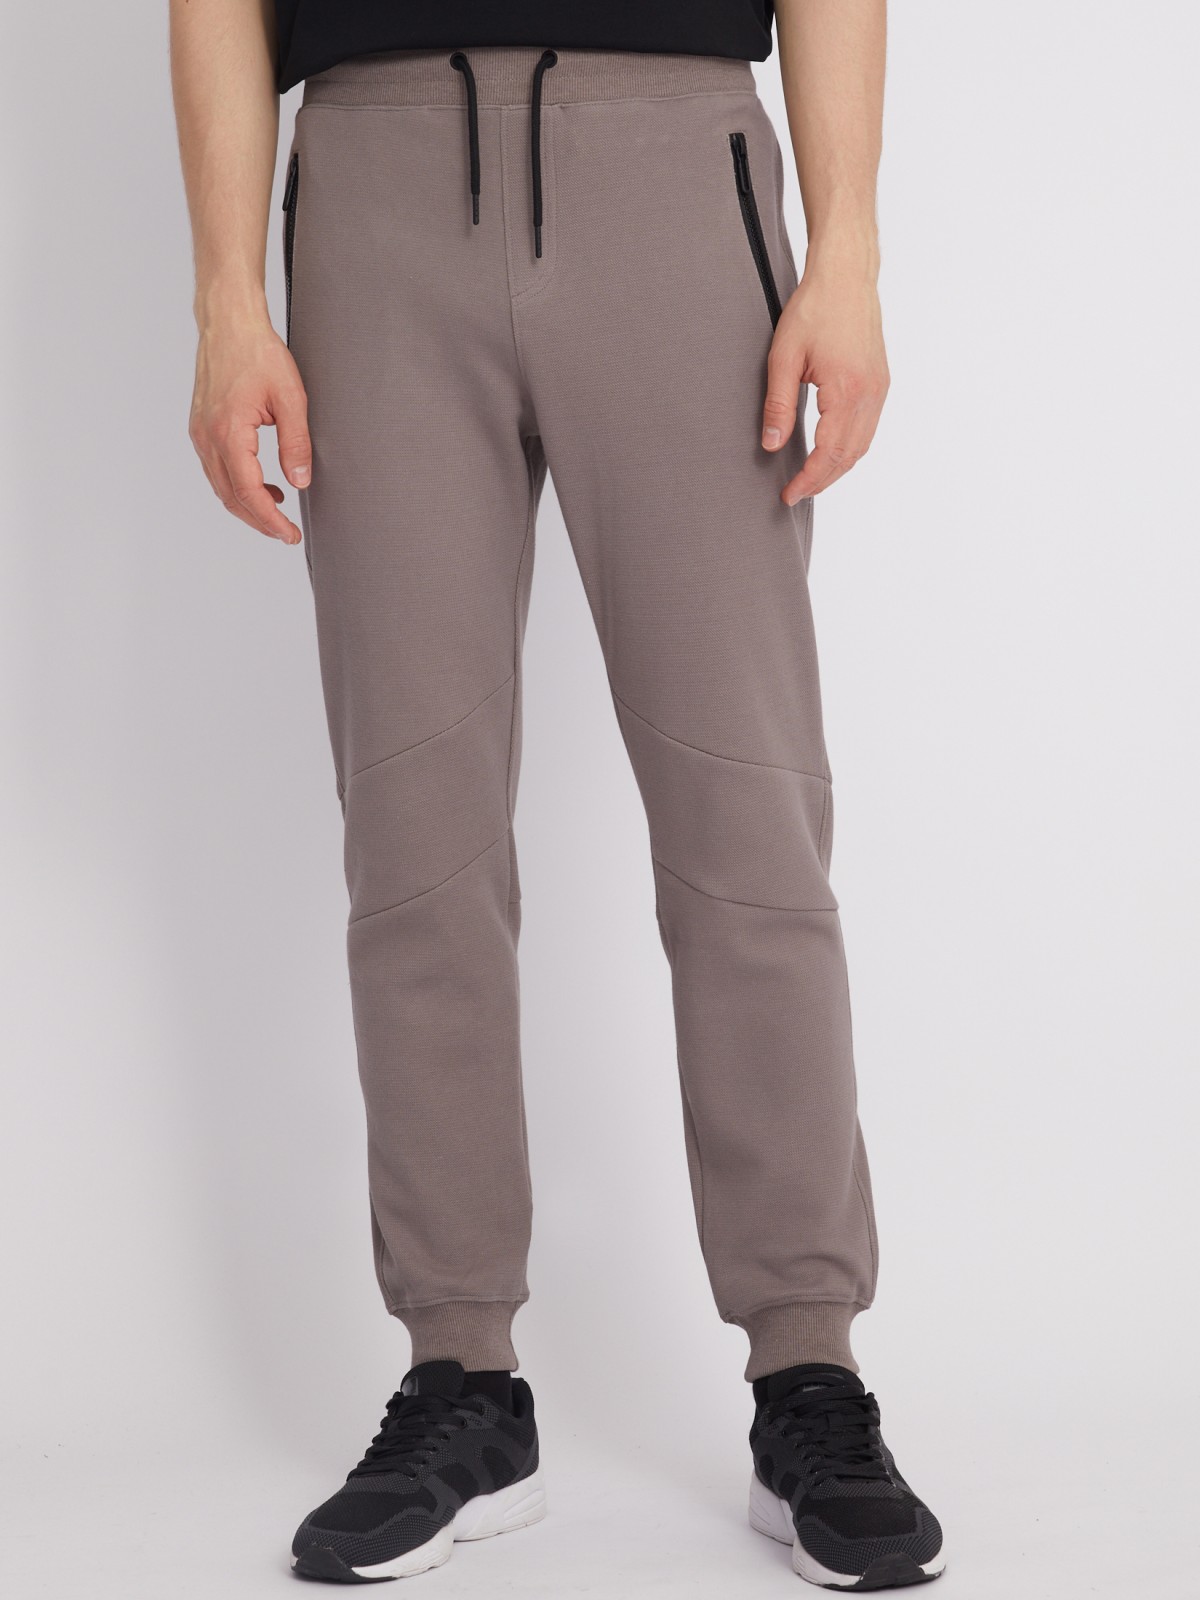 Трикотажные брюки-джоггеры в спортивном стиле zolla 213317679023, цвет коричневый, размер S - фото 2